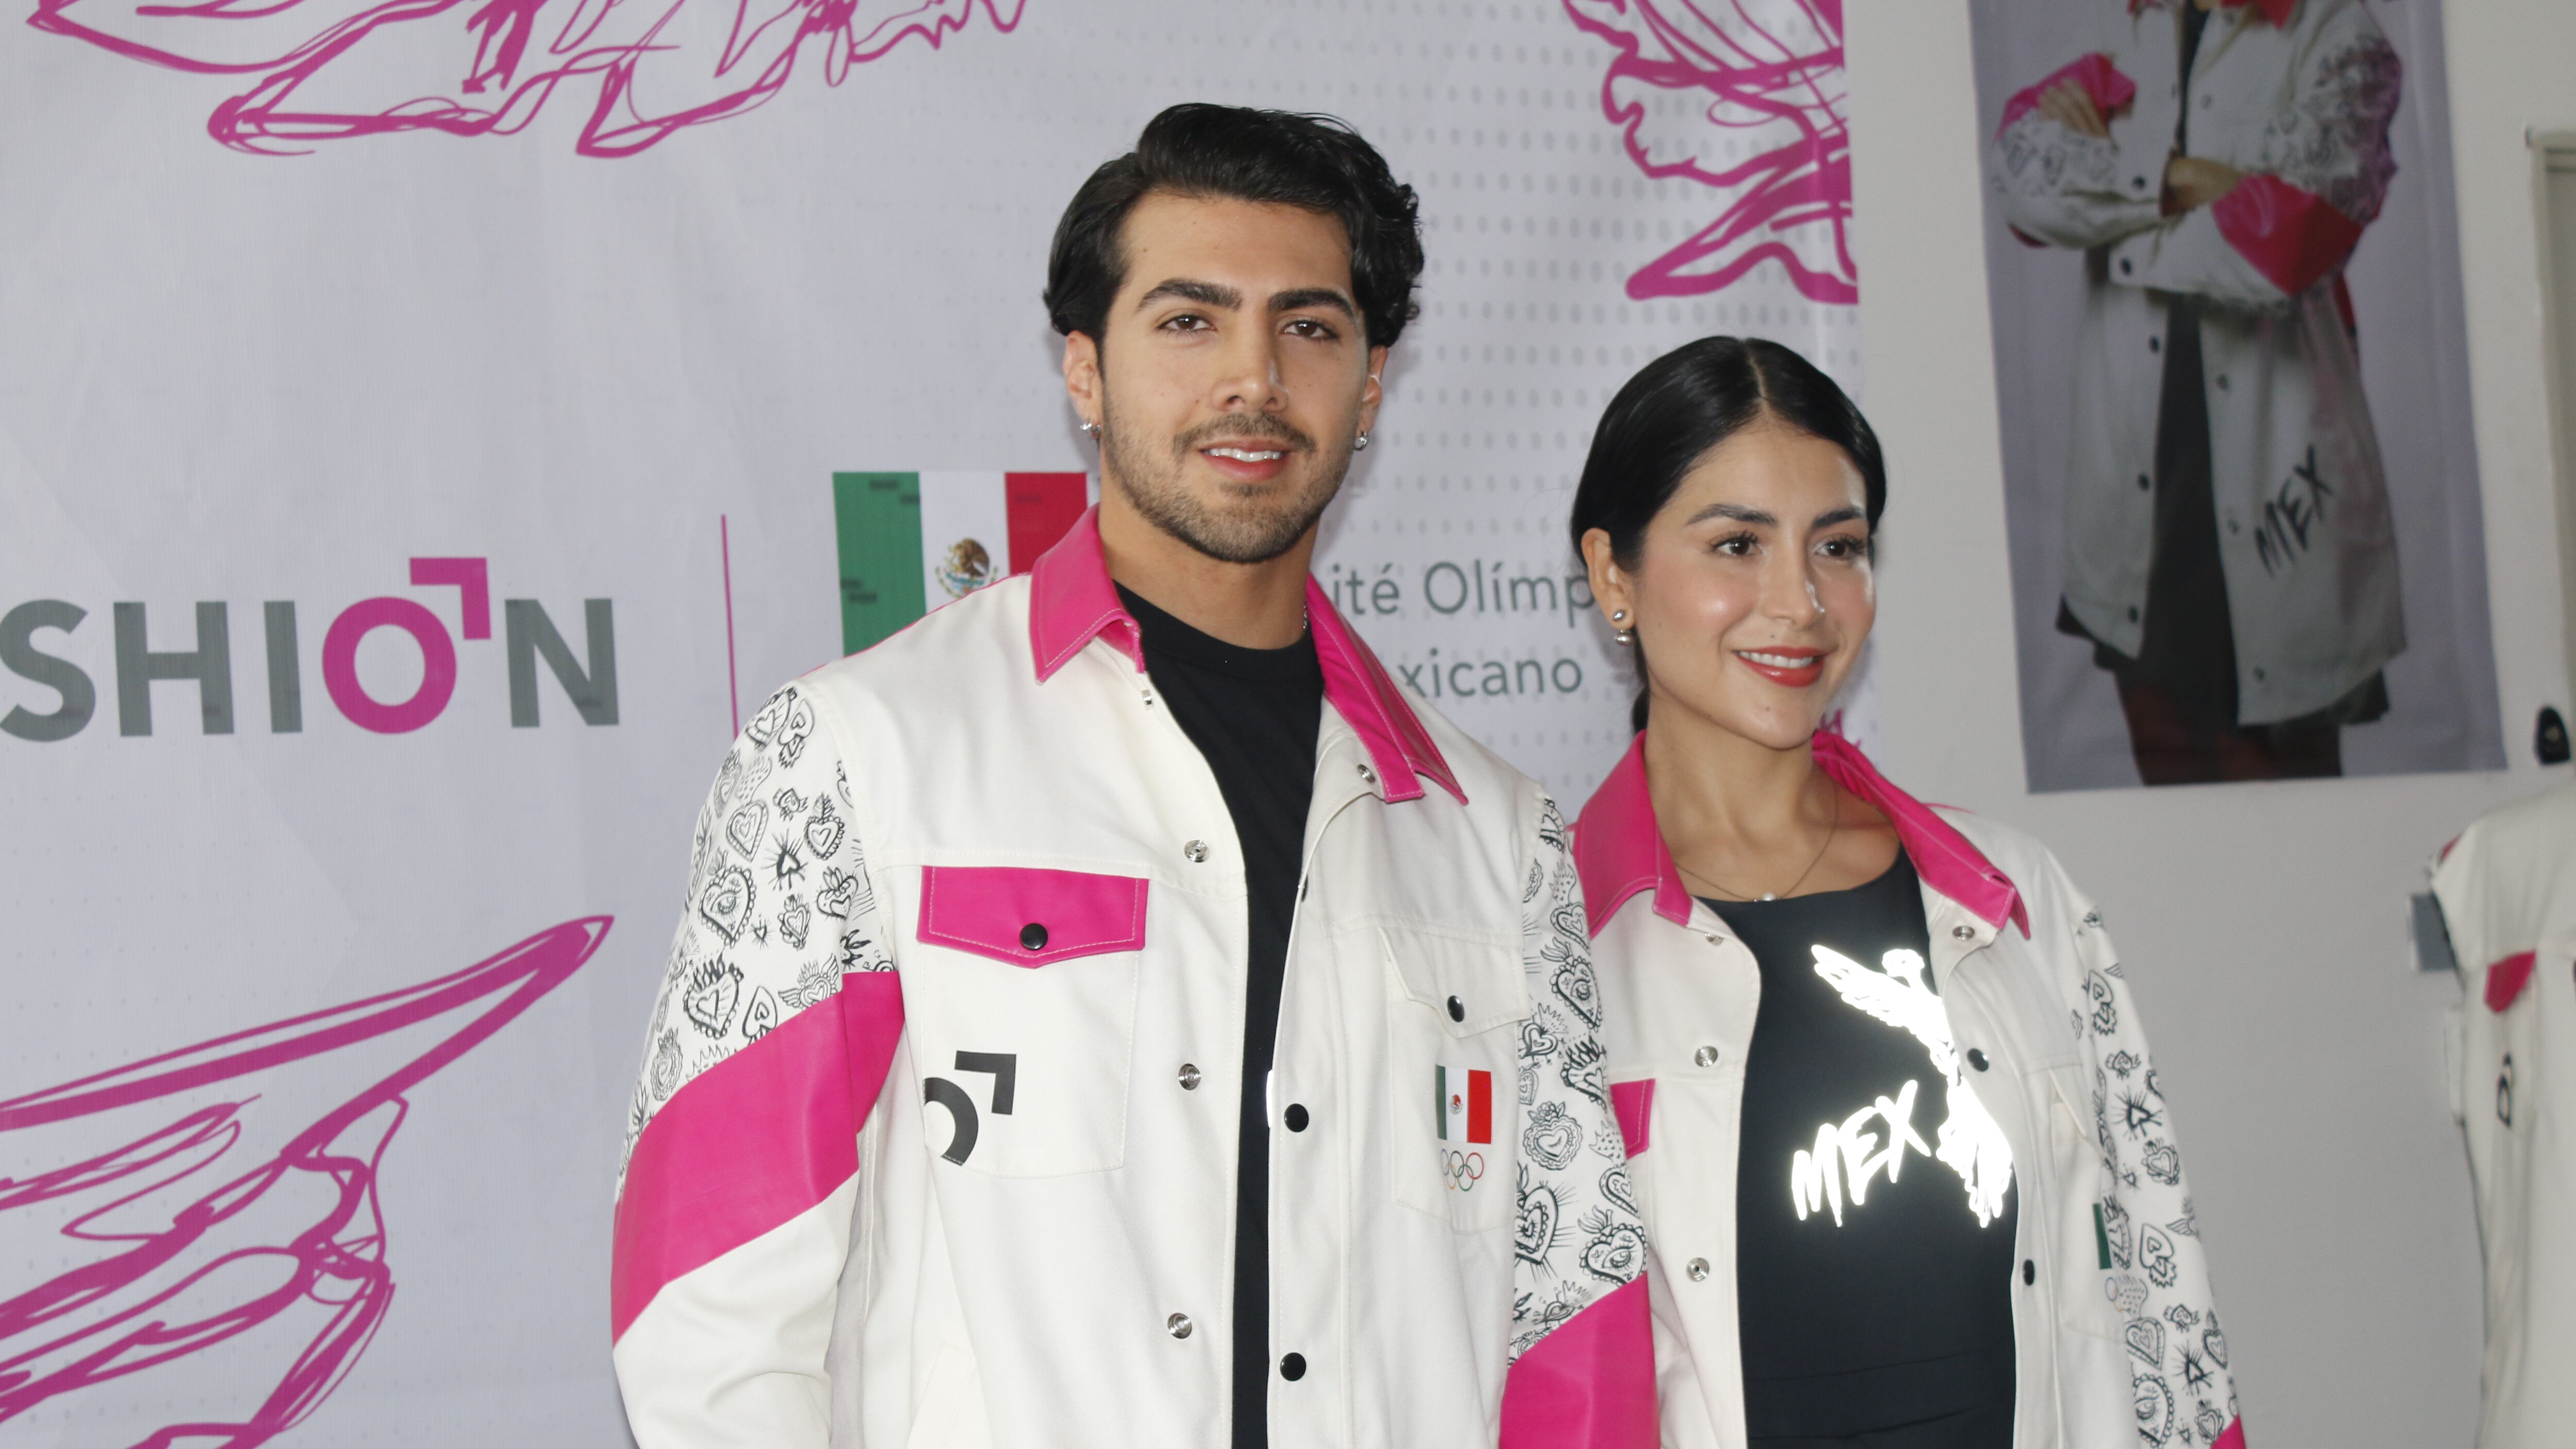 El atuendo de los atletas olímpicos está inspirado en el Ángel de la Independencia e integra el tono rosa mexicano con detalles artesanales que fusionan tradición y vanguardia en la moda deportiva